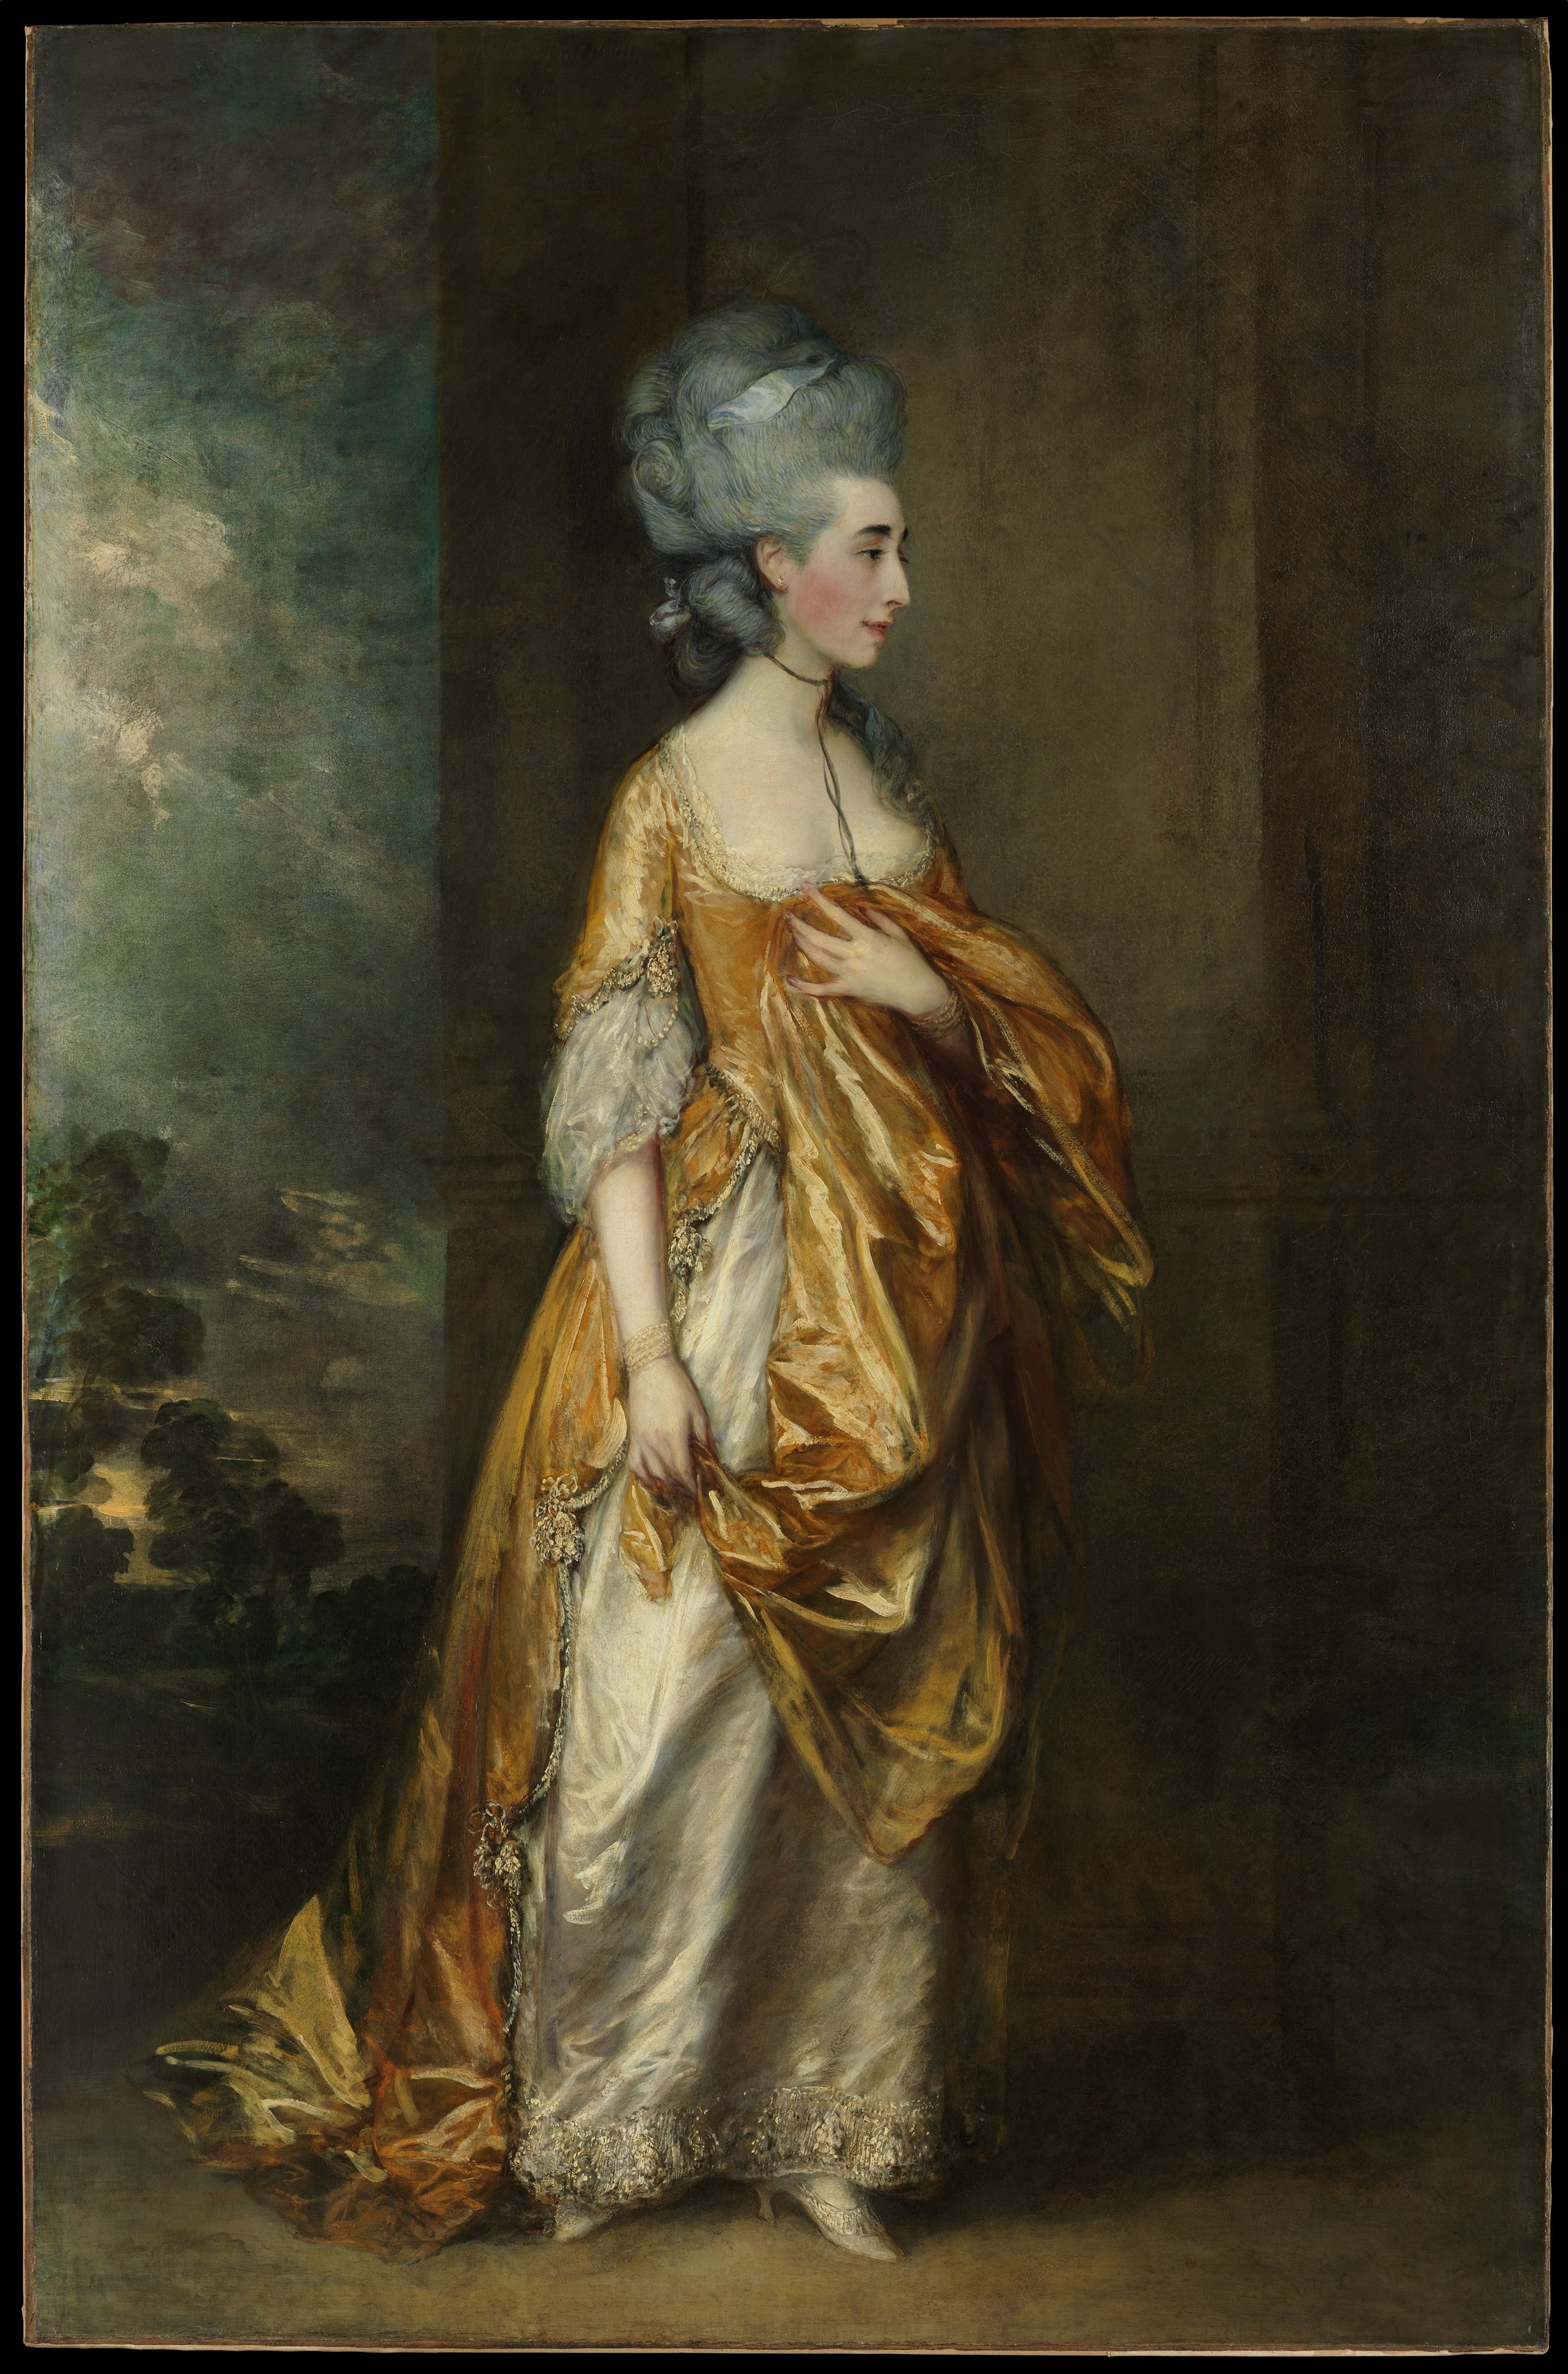 Señora Grace Dalrymple Elliott by Thomas Gainsborough - 1778 Museo Metropolitano de Arte